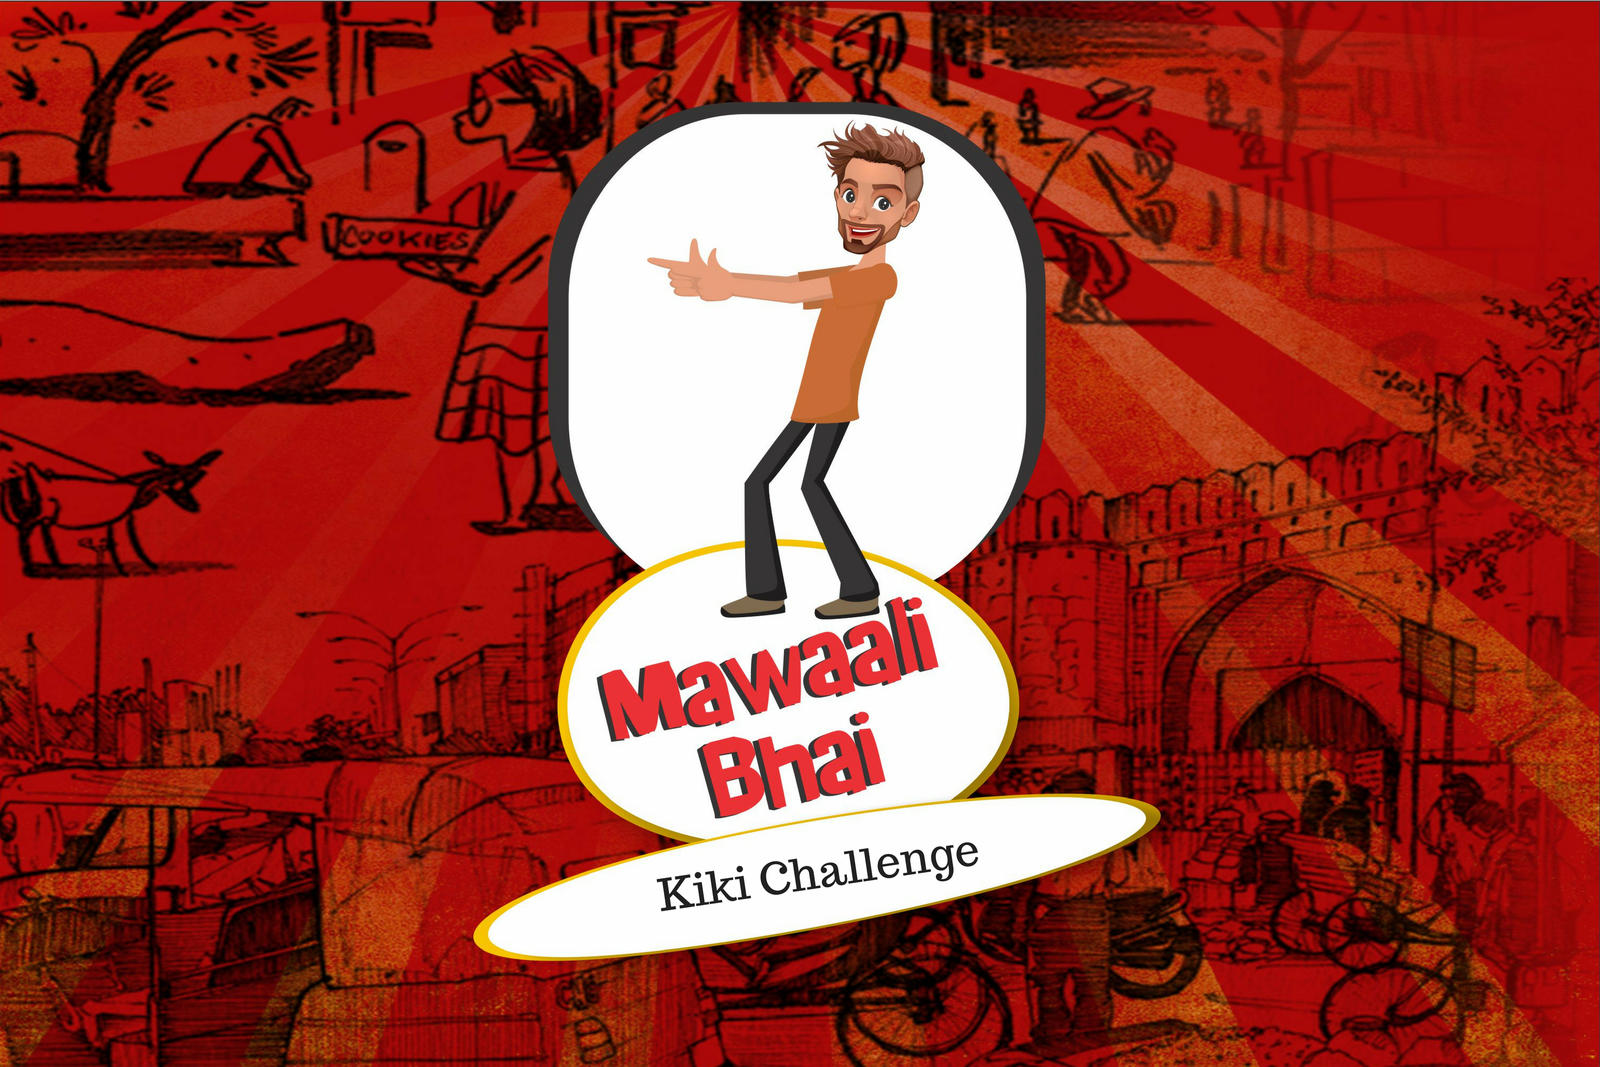 Mawaali Bhai - Kiki Challenge